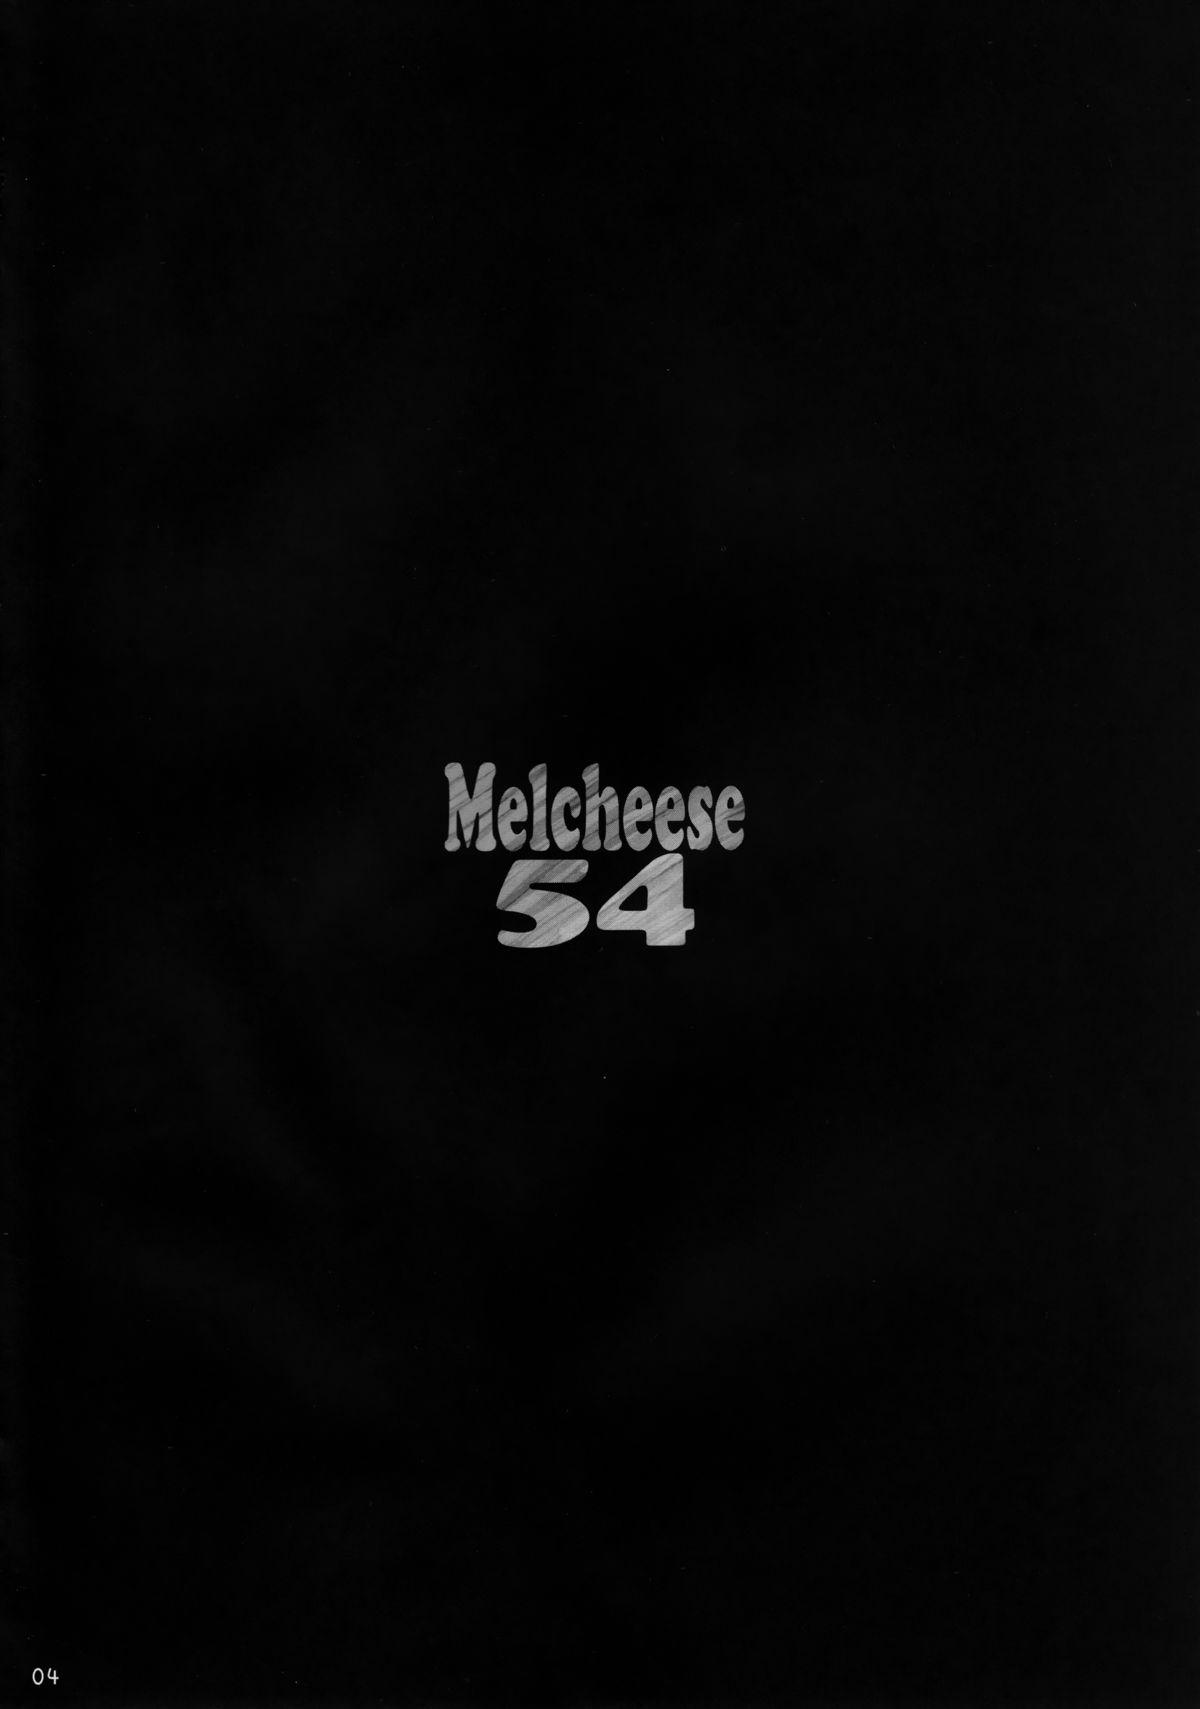 Melcheese 54 2